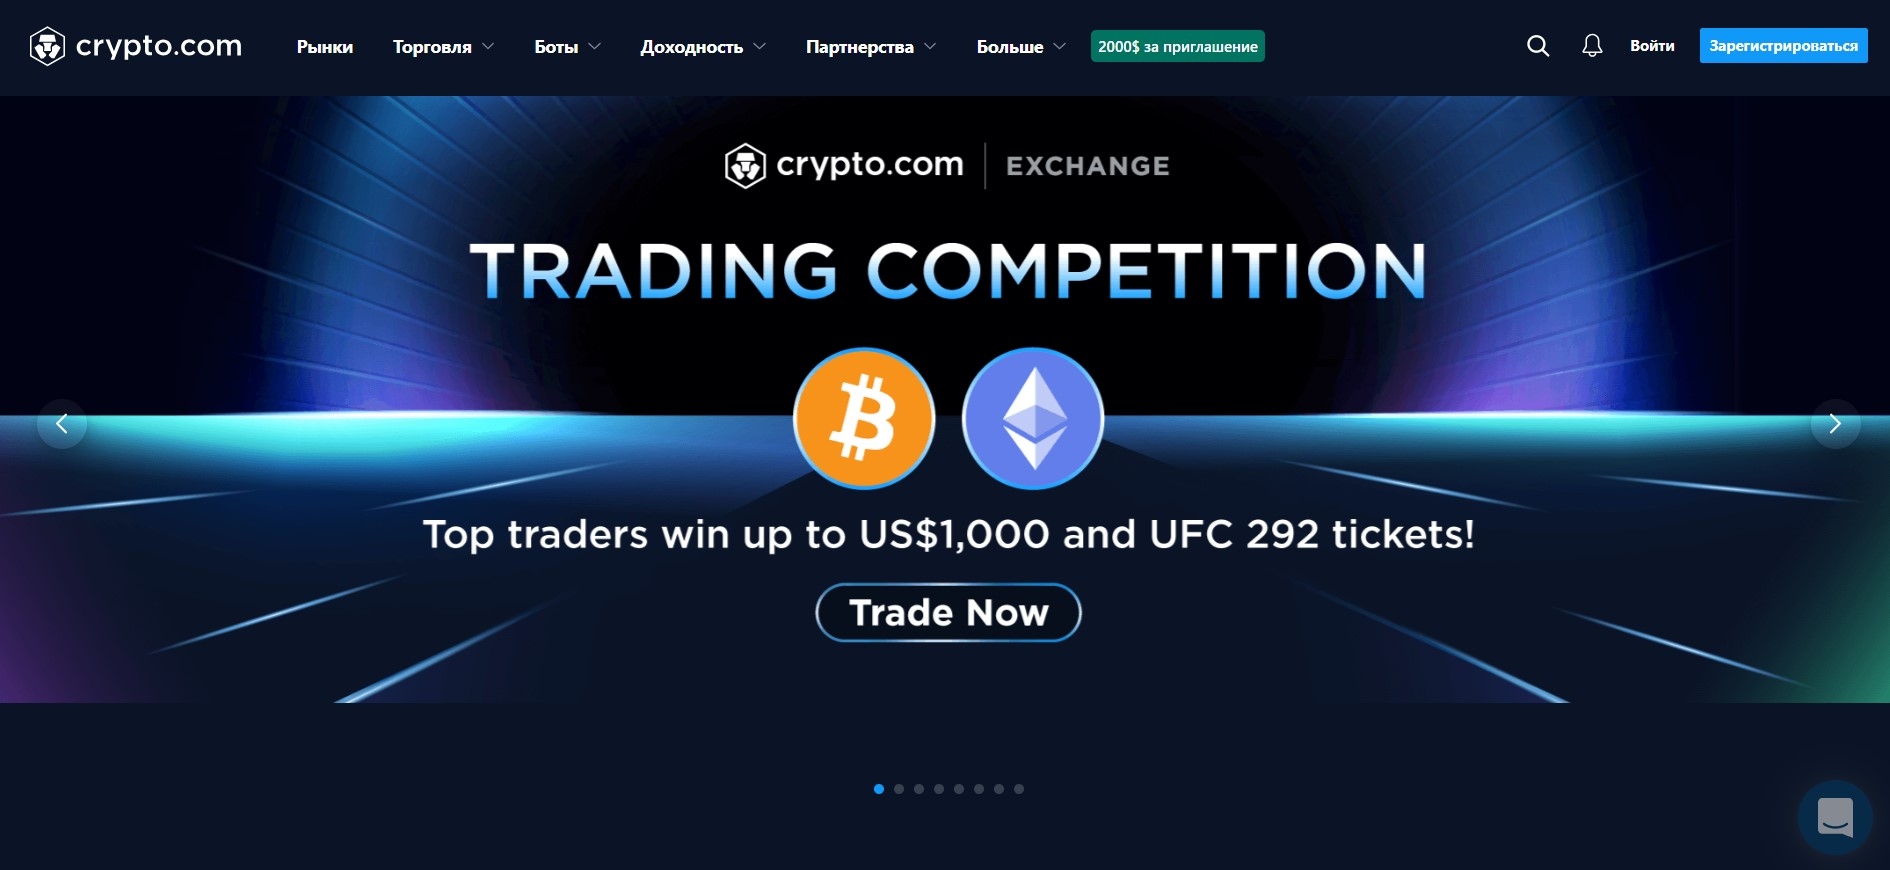 Главная страница сайта биржи Crypto.com